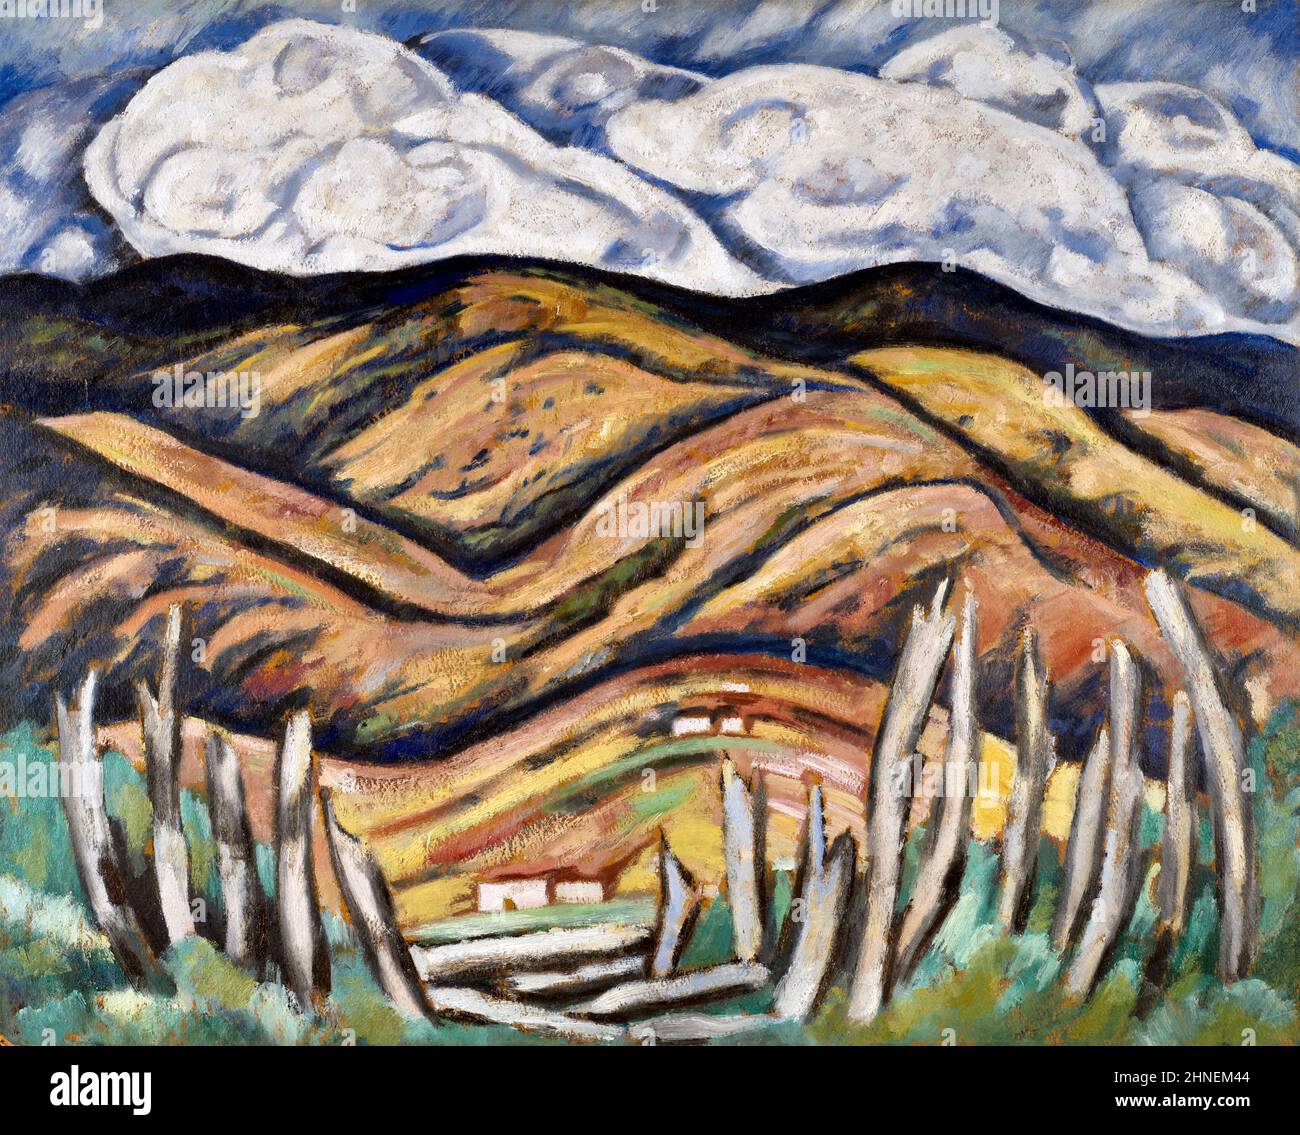 The Last of New England – The Beginning of New Mexico von dem amerikanischen Maler der Moderne, Martsden Hartley (1877-1943), Öl auf Leinwand, 1918/19 Stockfoto